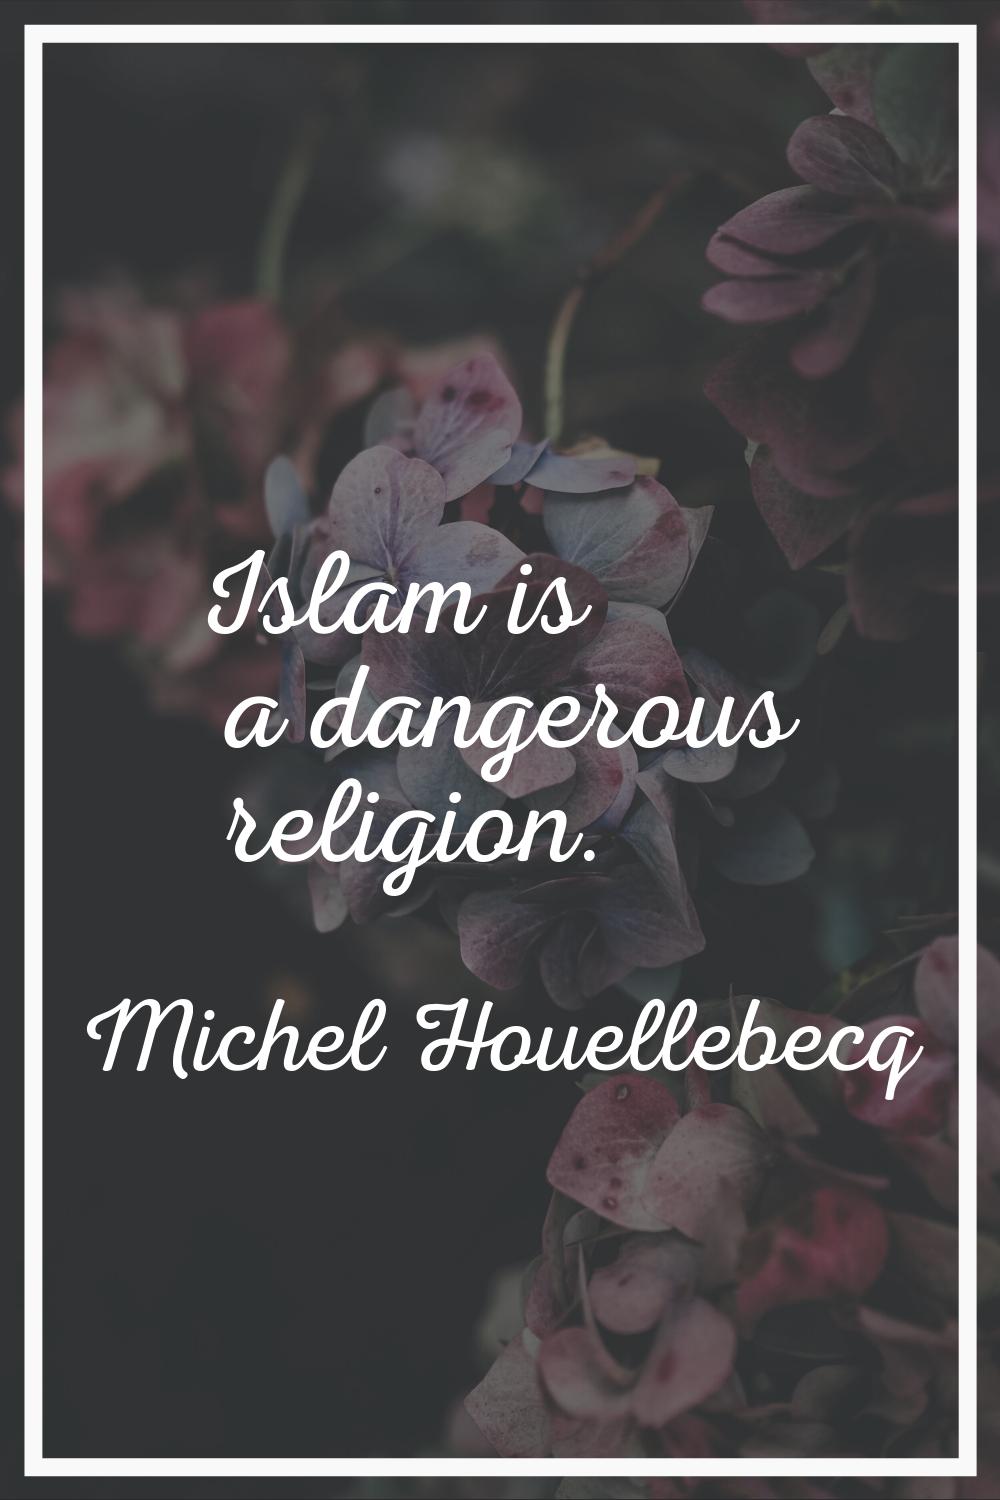 Islam is a dangerous religion.